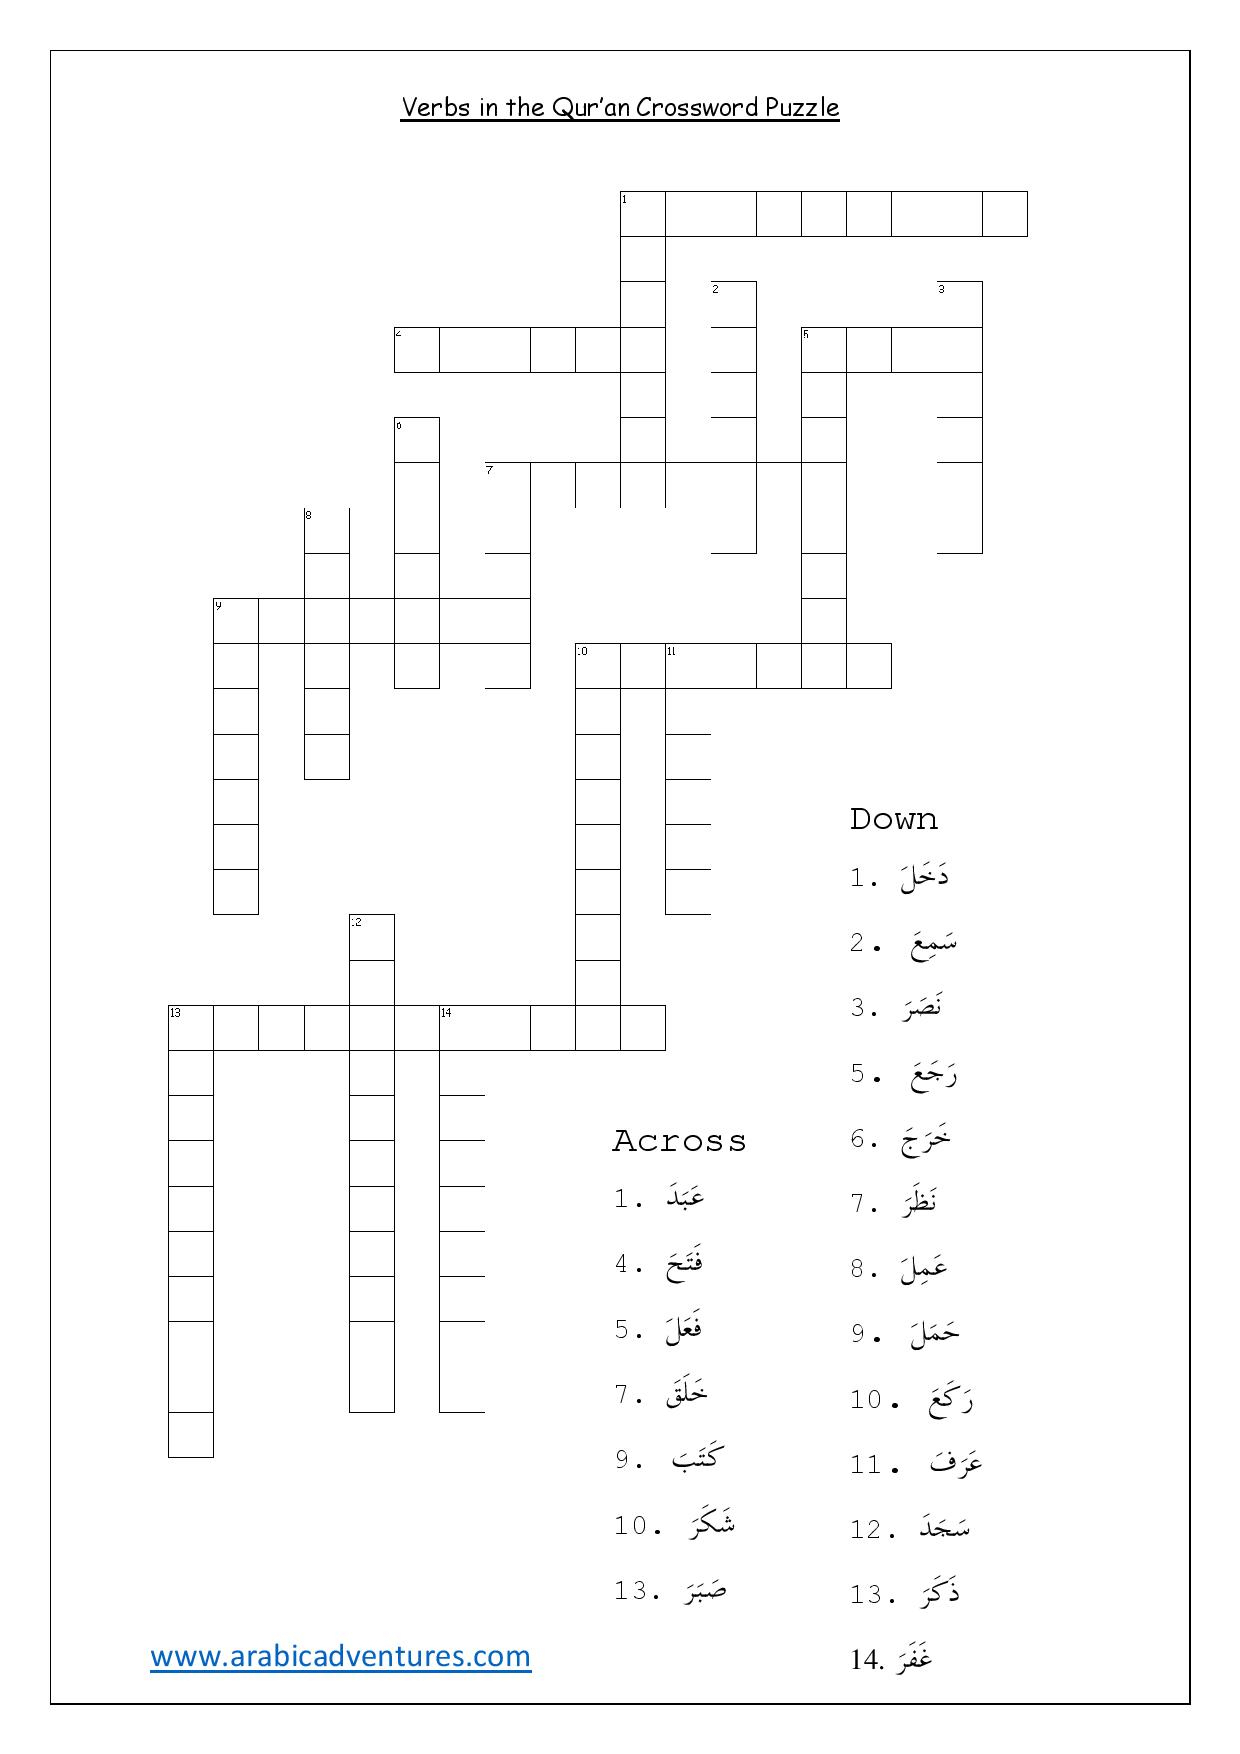 Arabic Crossword Puzzle Printable